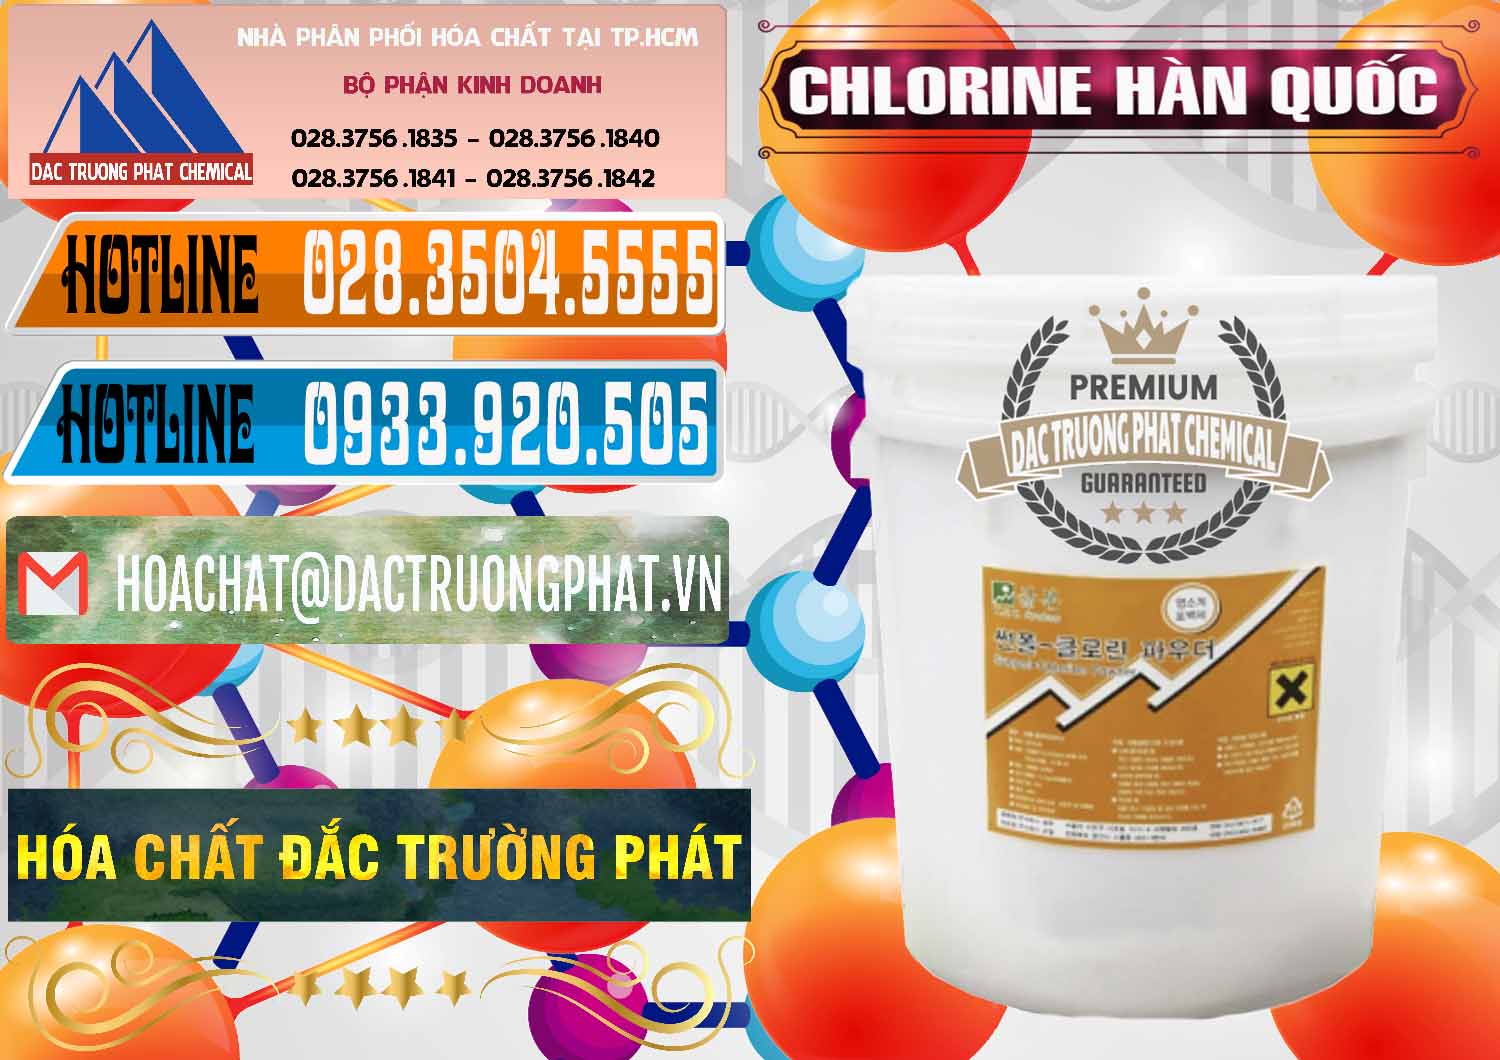 Cty chuyên cung cấp _ bán Chlorine – Clorin 70% Hàn Quốc Korea - 0345 - Công ty phân phối _ cung ứng hóa chất tại TP.HCM - stmp.net